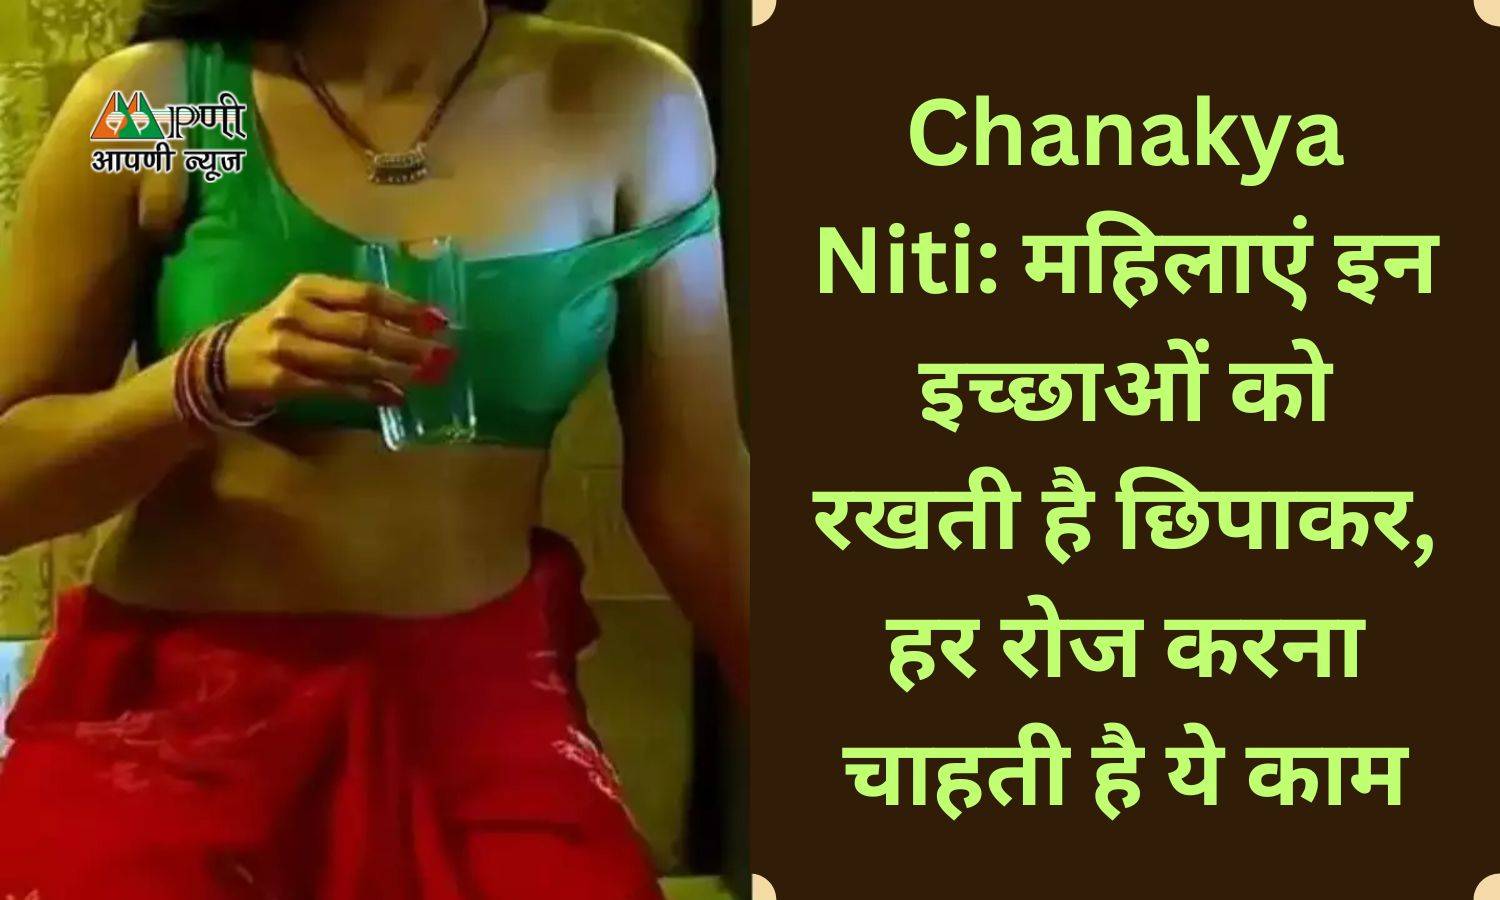 Chanakya Niti: महिलाएं इन इच्छाओं को रखती है छिपाकर, हर रोज करना चाहती है ये काम